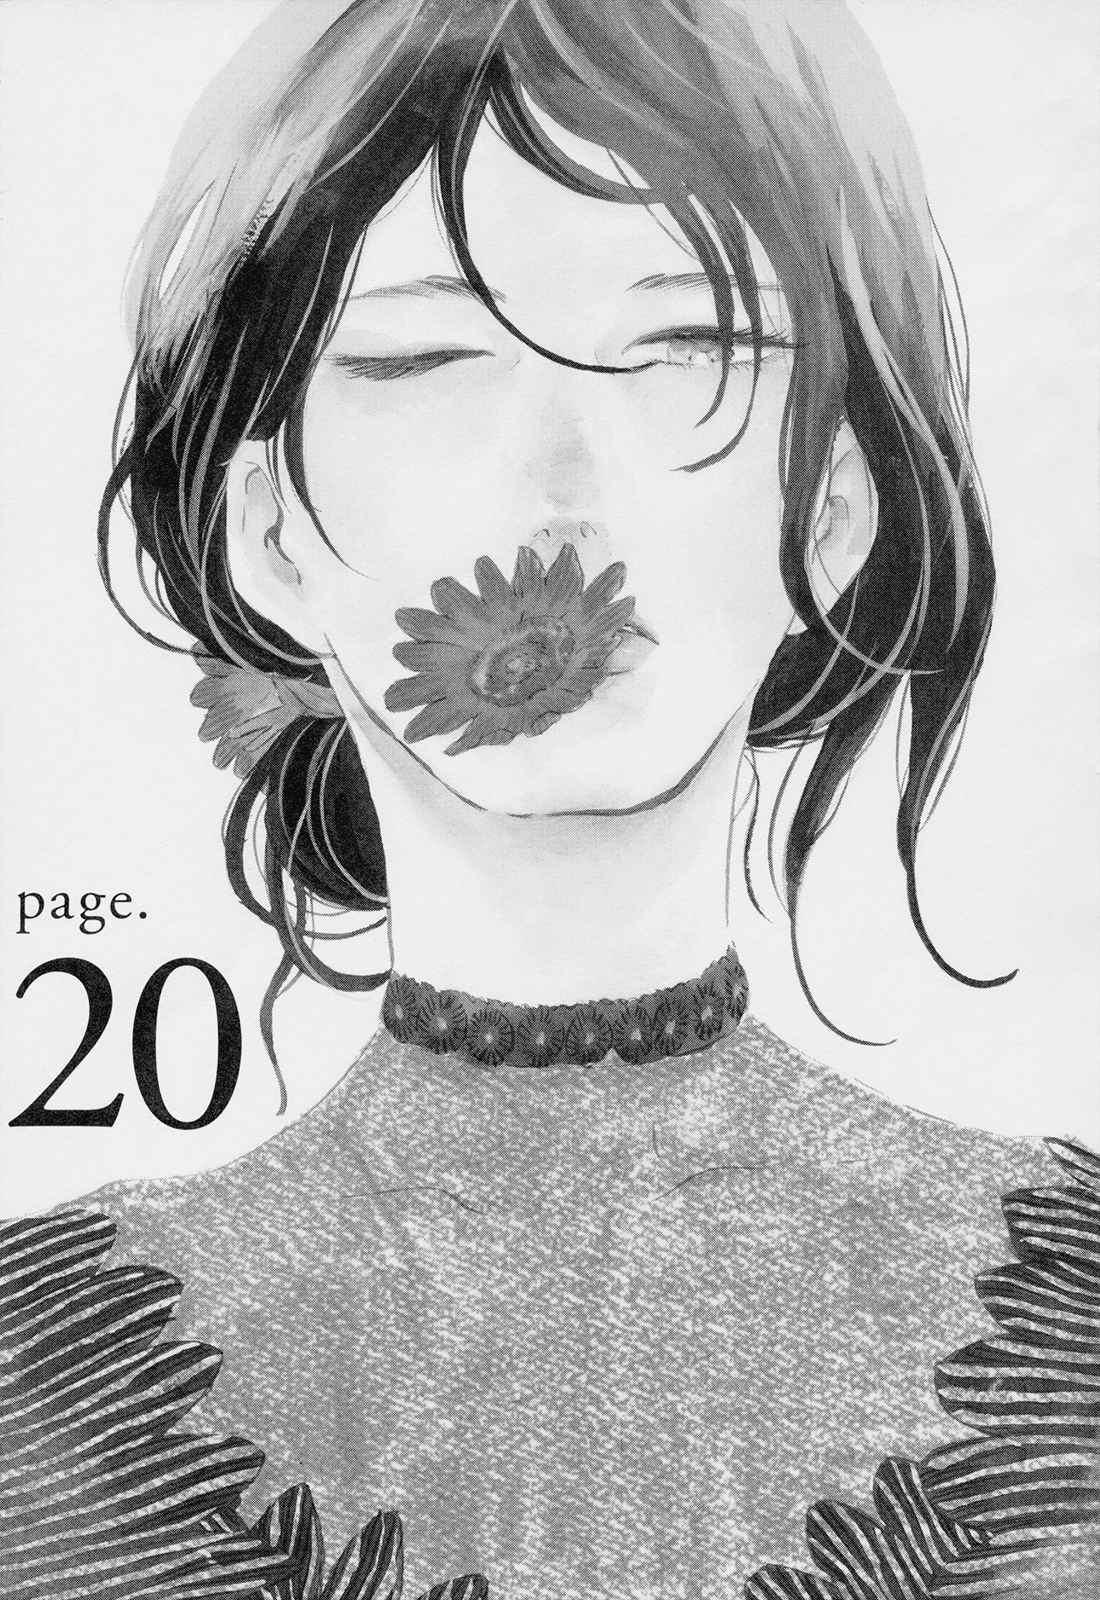 Ikoku Nikki Vol. 4 Ch. 20 page.20